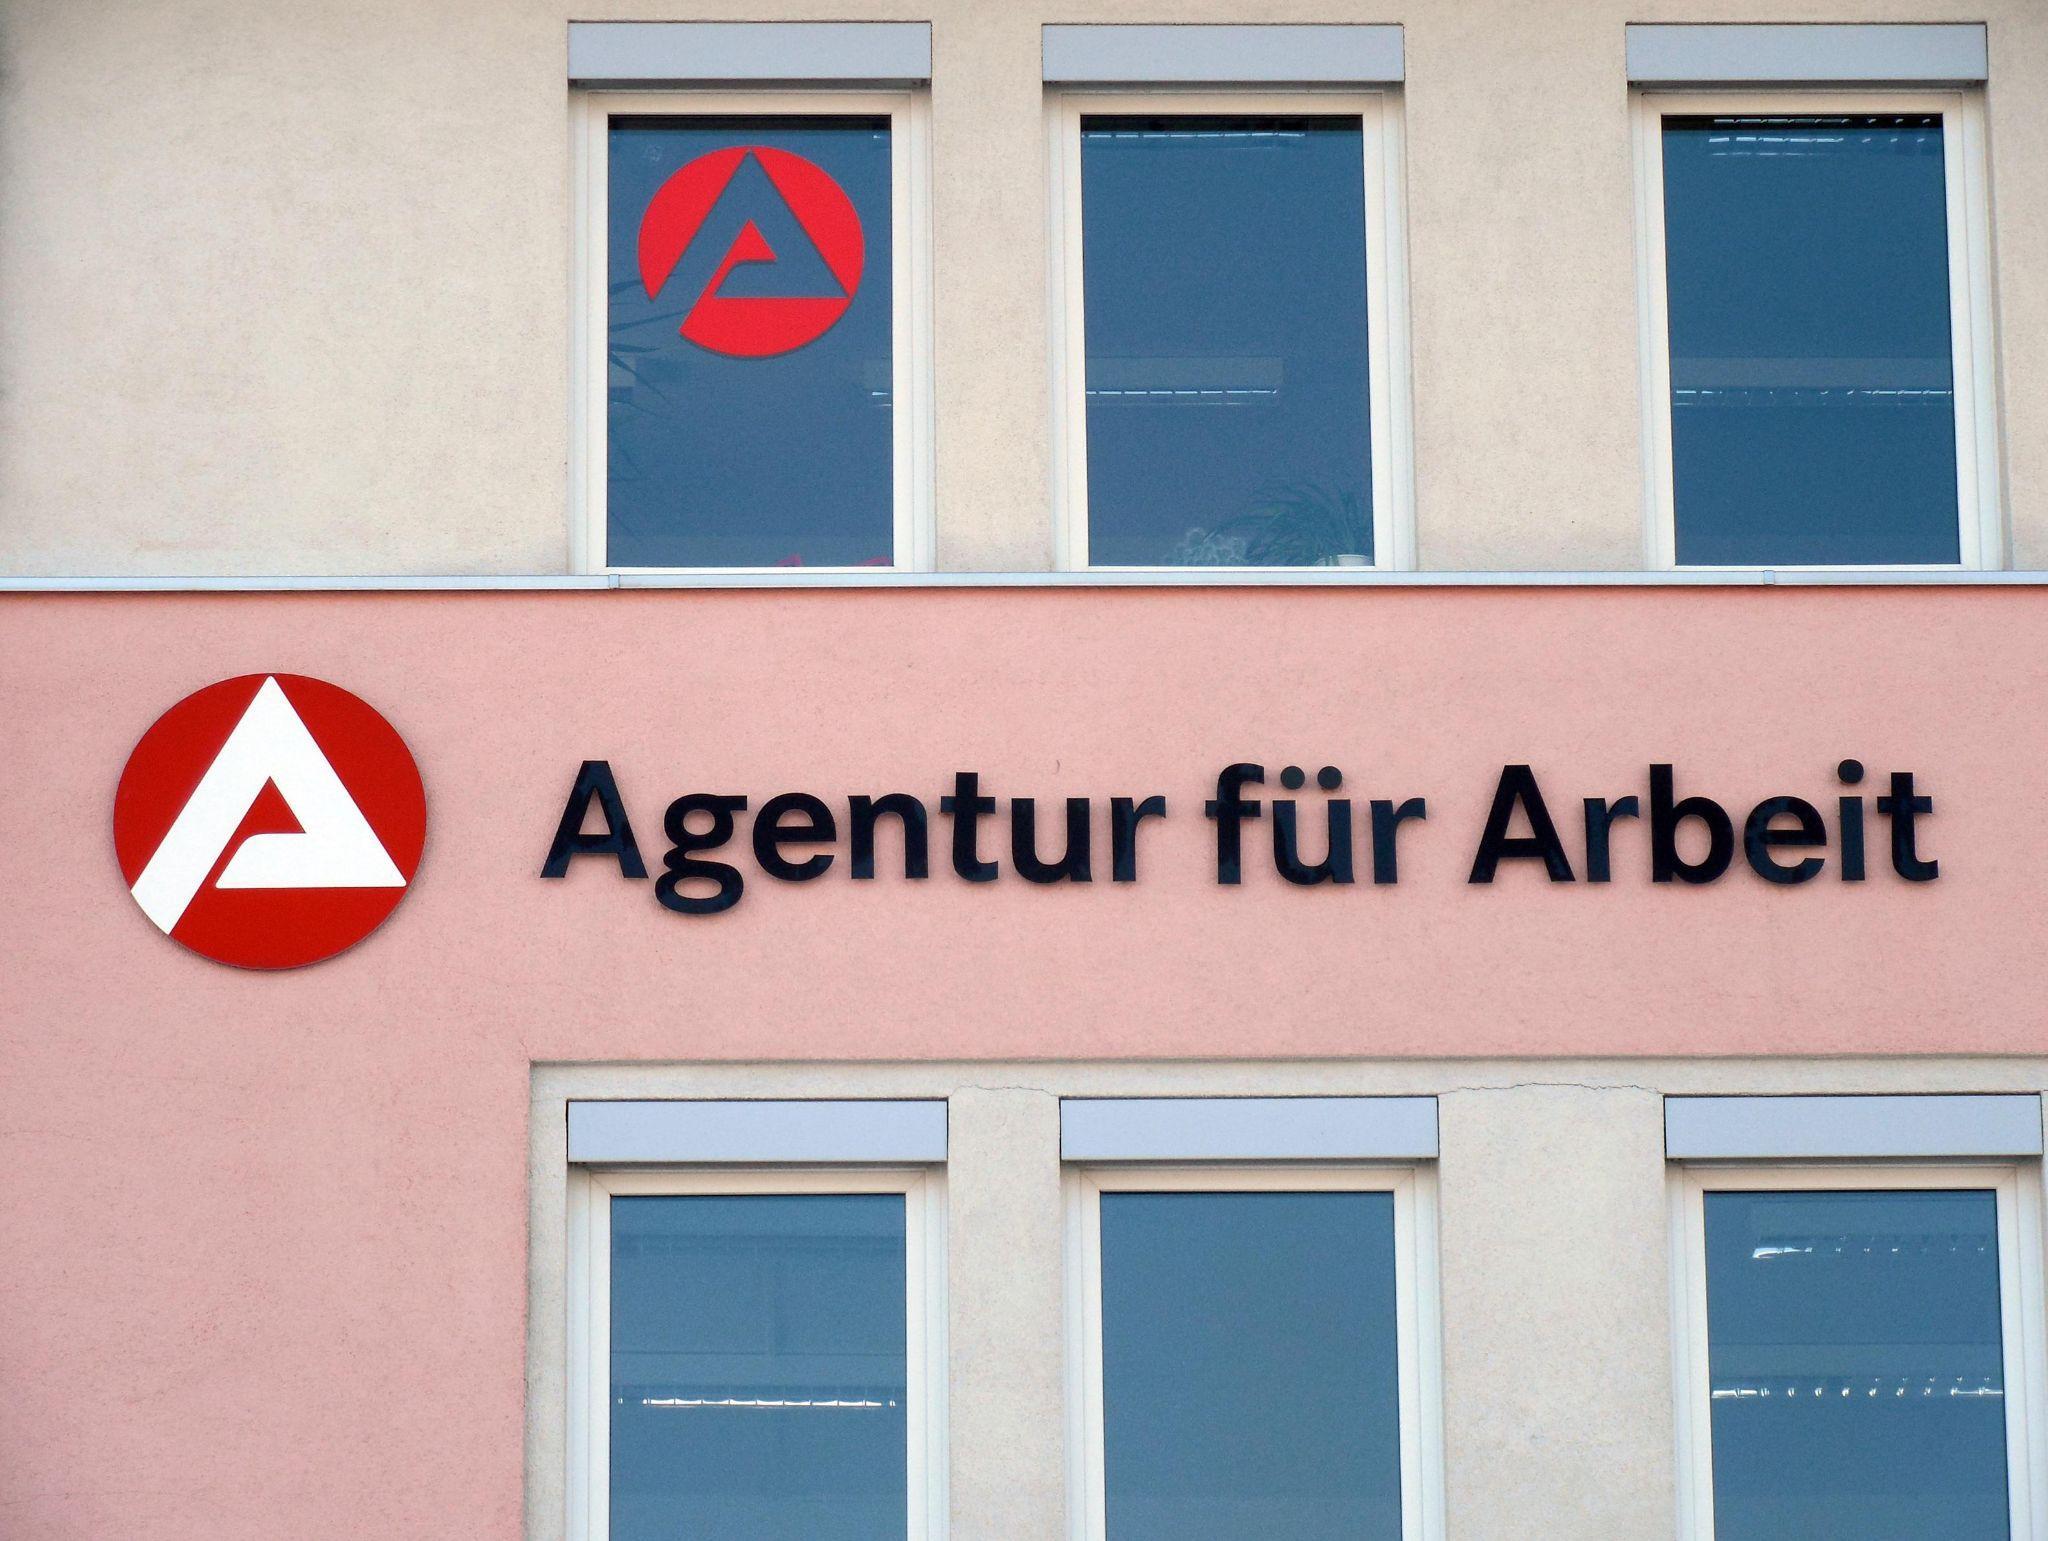 Федеральное агентство занятости Arbeitsagentur